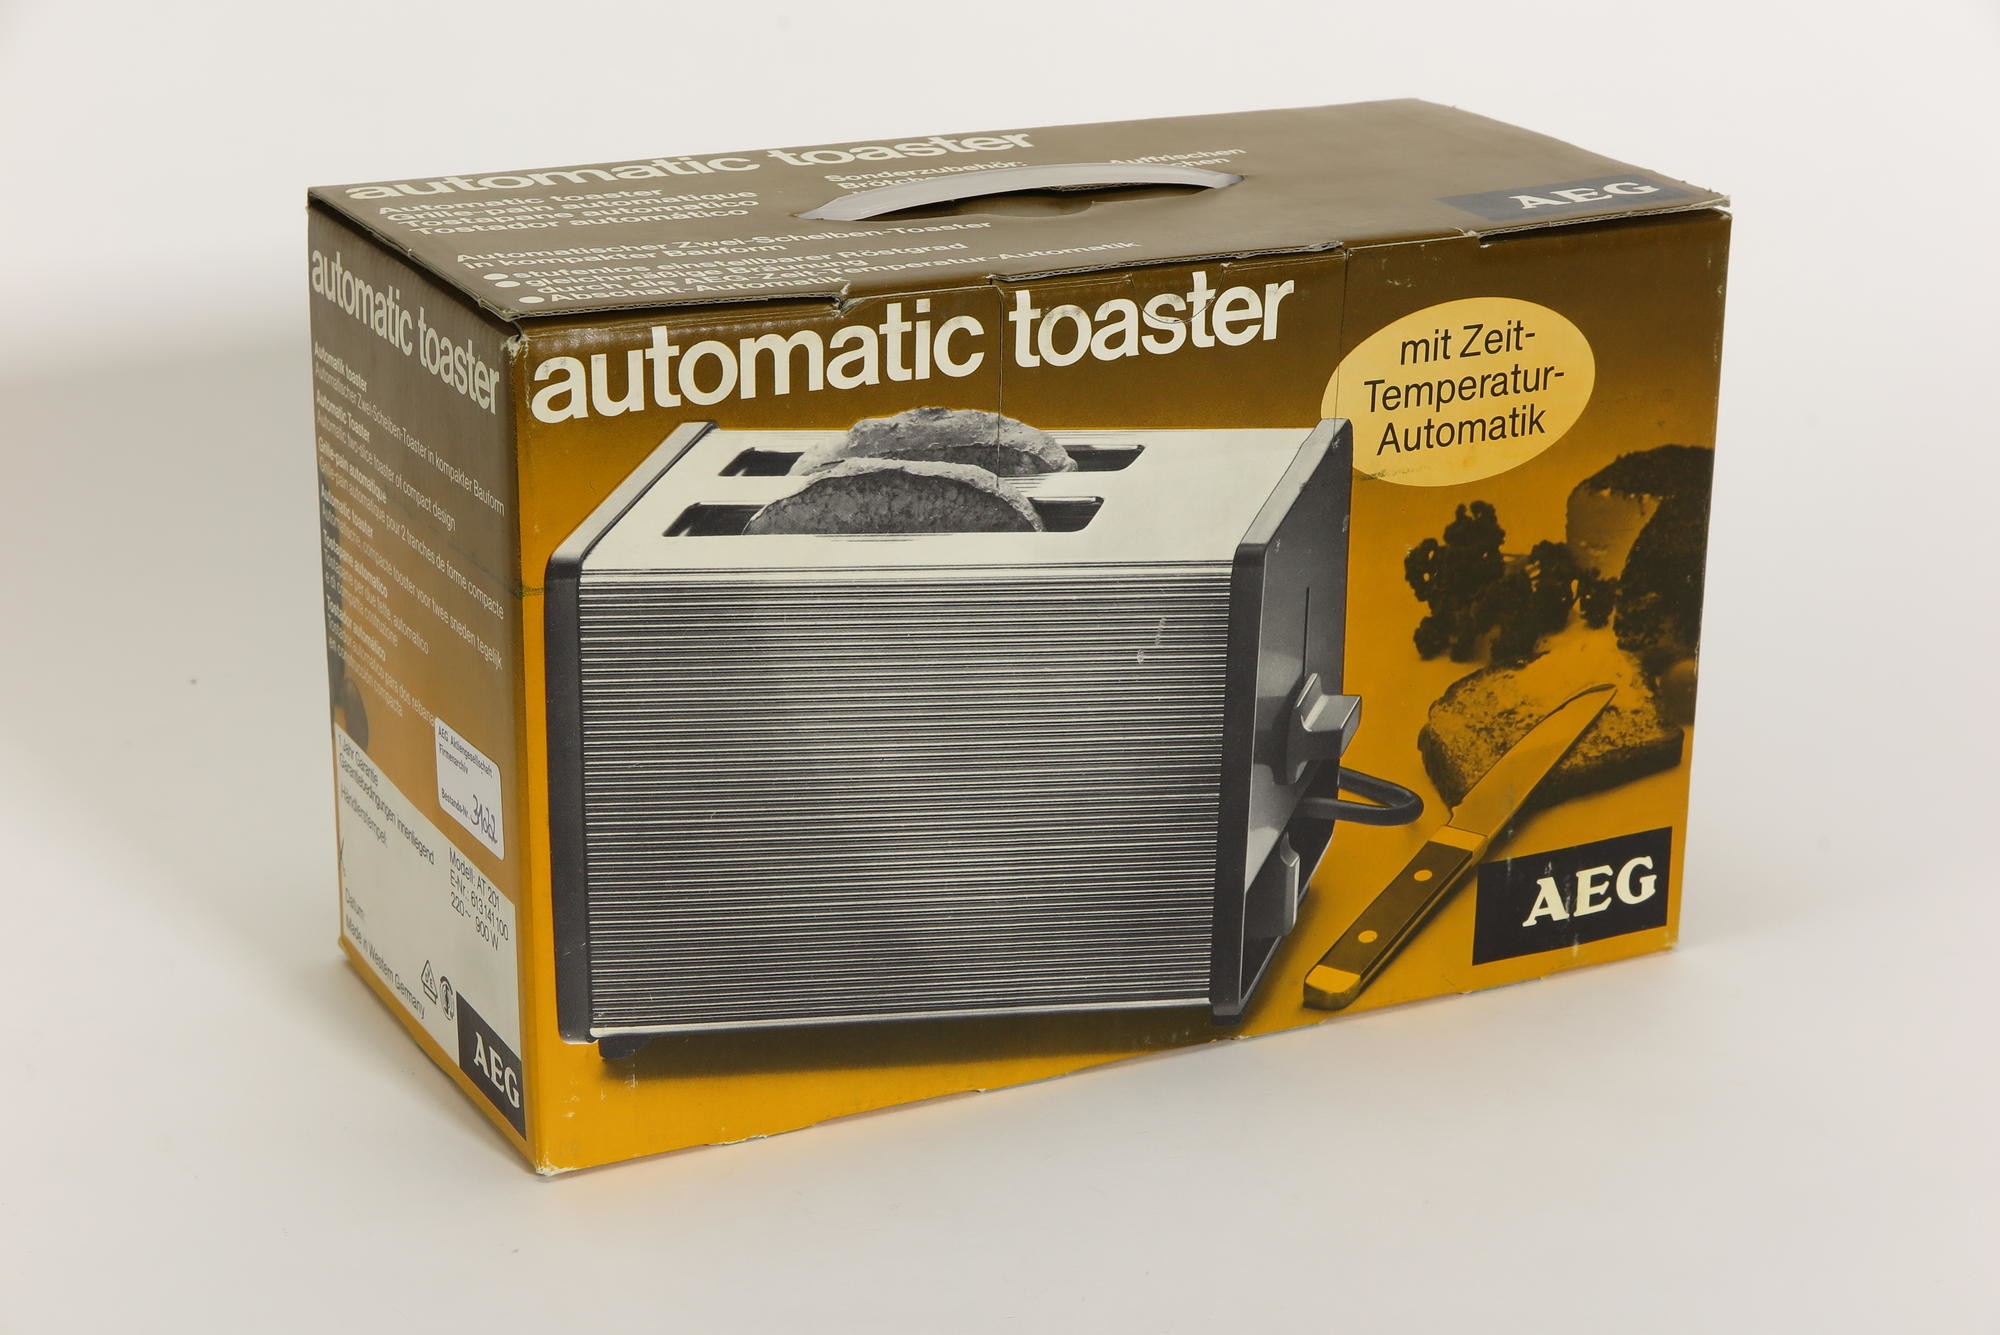 Verpackungskarton, Zubehör zu Automatischer Toaster AEG Typ E WK 0001 Modell AT 201 `automatic toaster´ (Stiftung Deutsches Technikmuseum Berlin CC0)